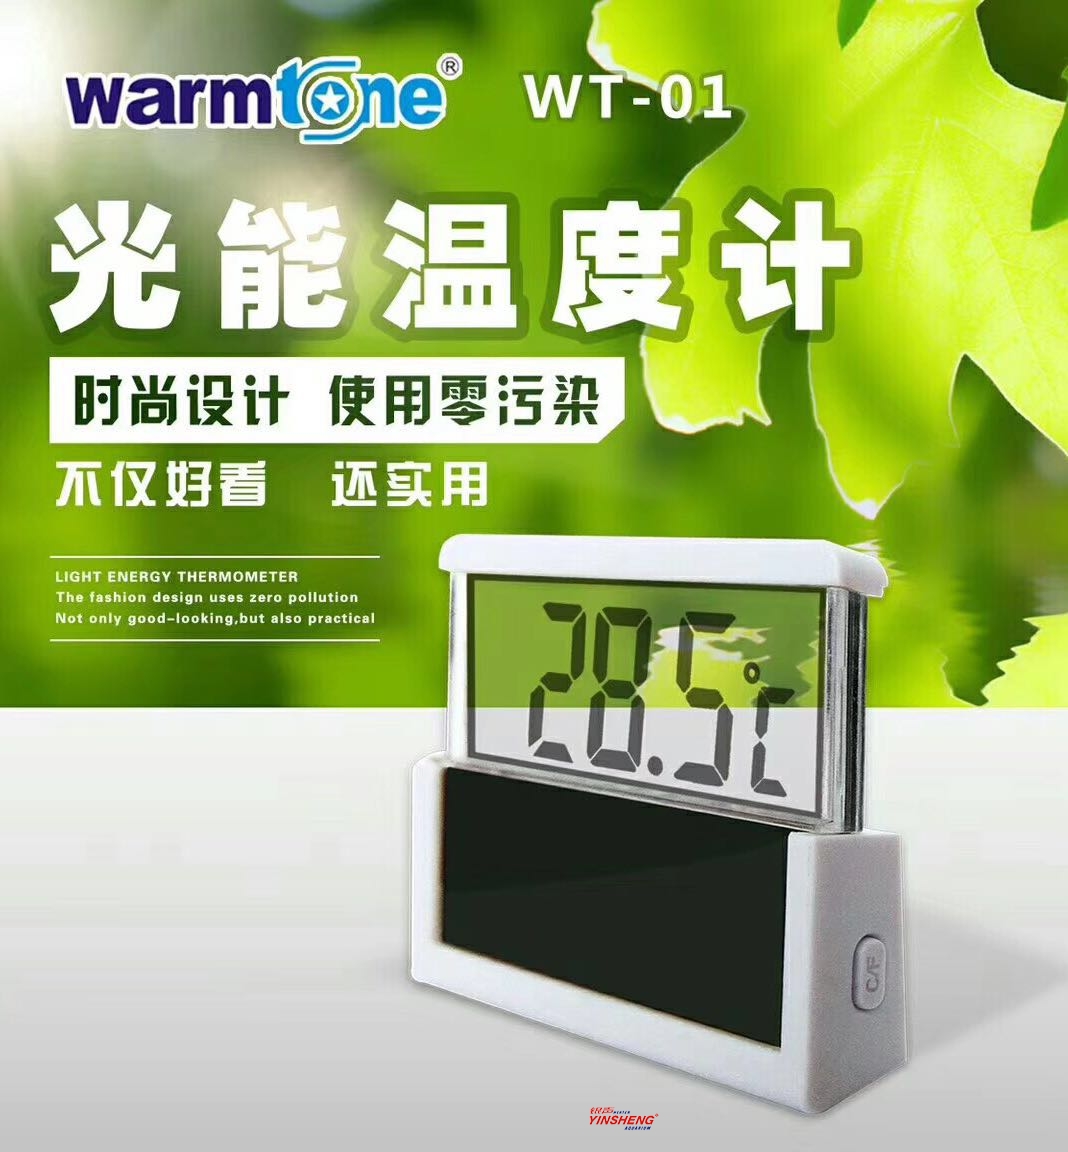 WT-01光能温度计